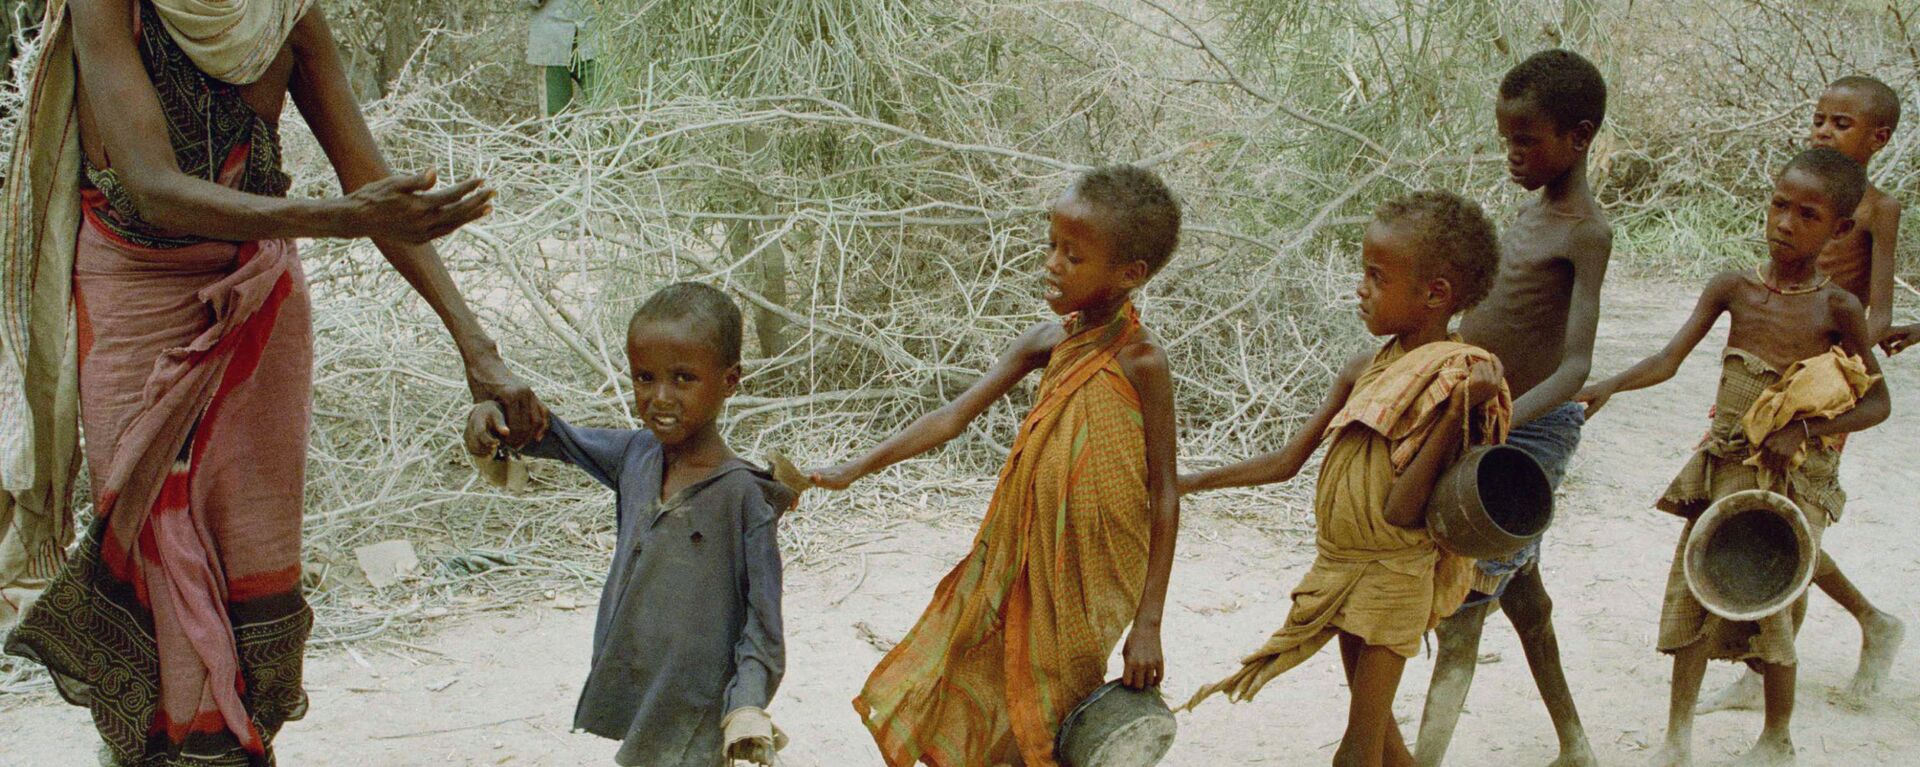 ソマリアの飢えた子どもたち - Sputnik 日本, 1920, 23.08.2022